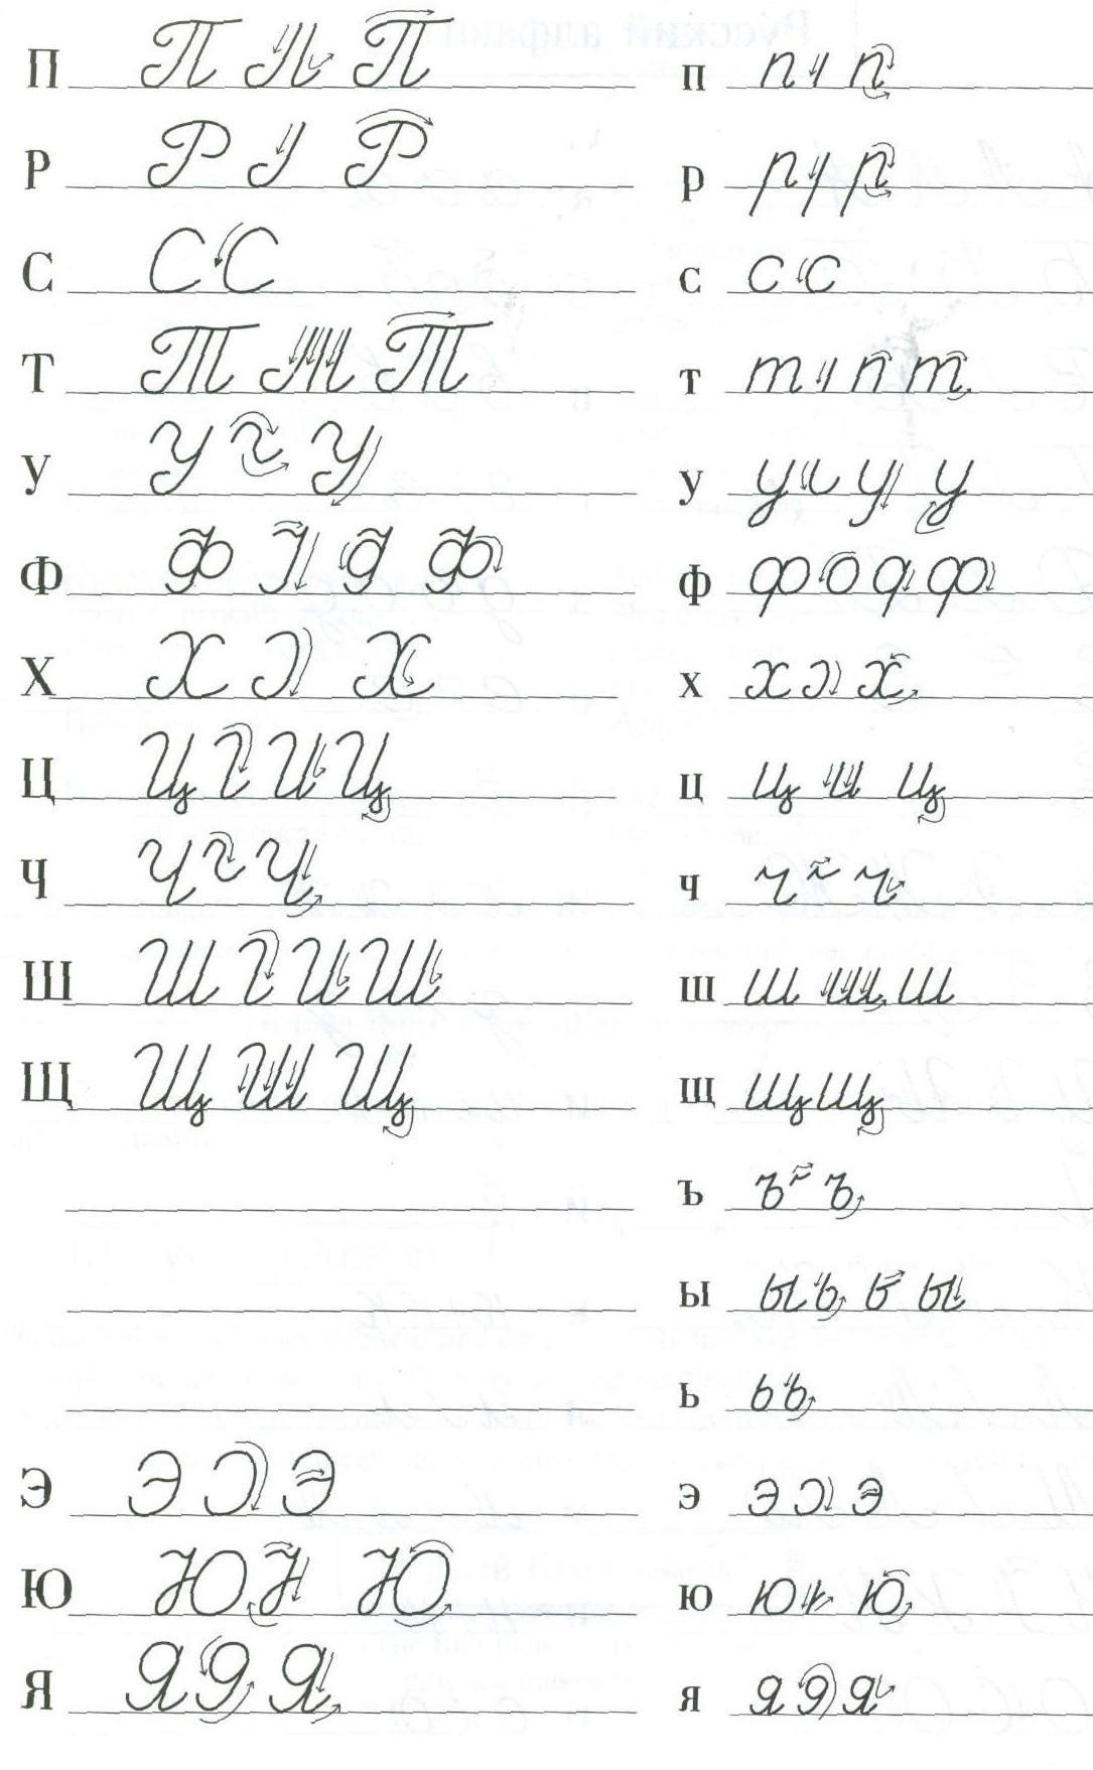 Blatt 2. Korrektes Schreiben von handgeschriebenen russischen Buchstaben.